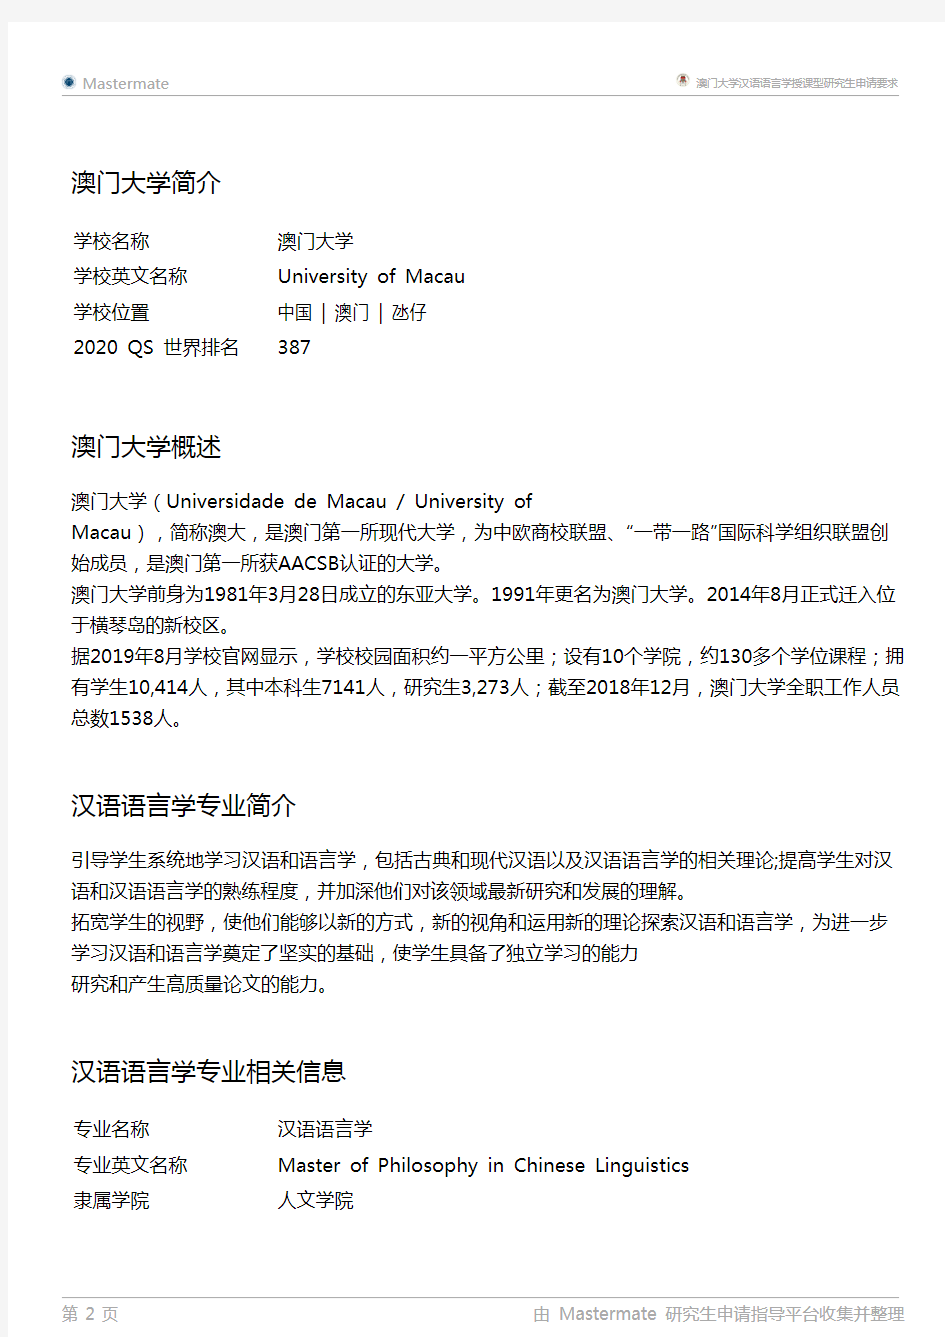 澳门大学汉语语言学授课型研究生申请要求